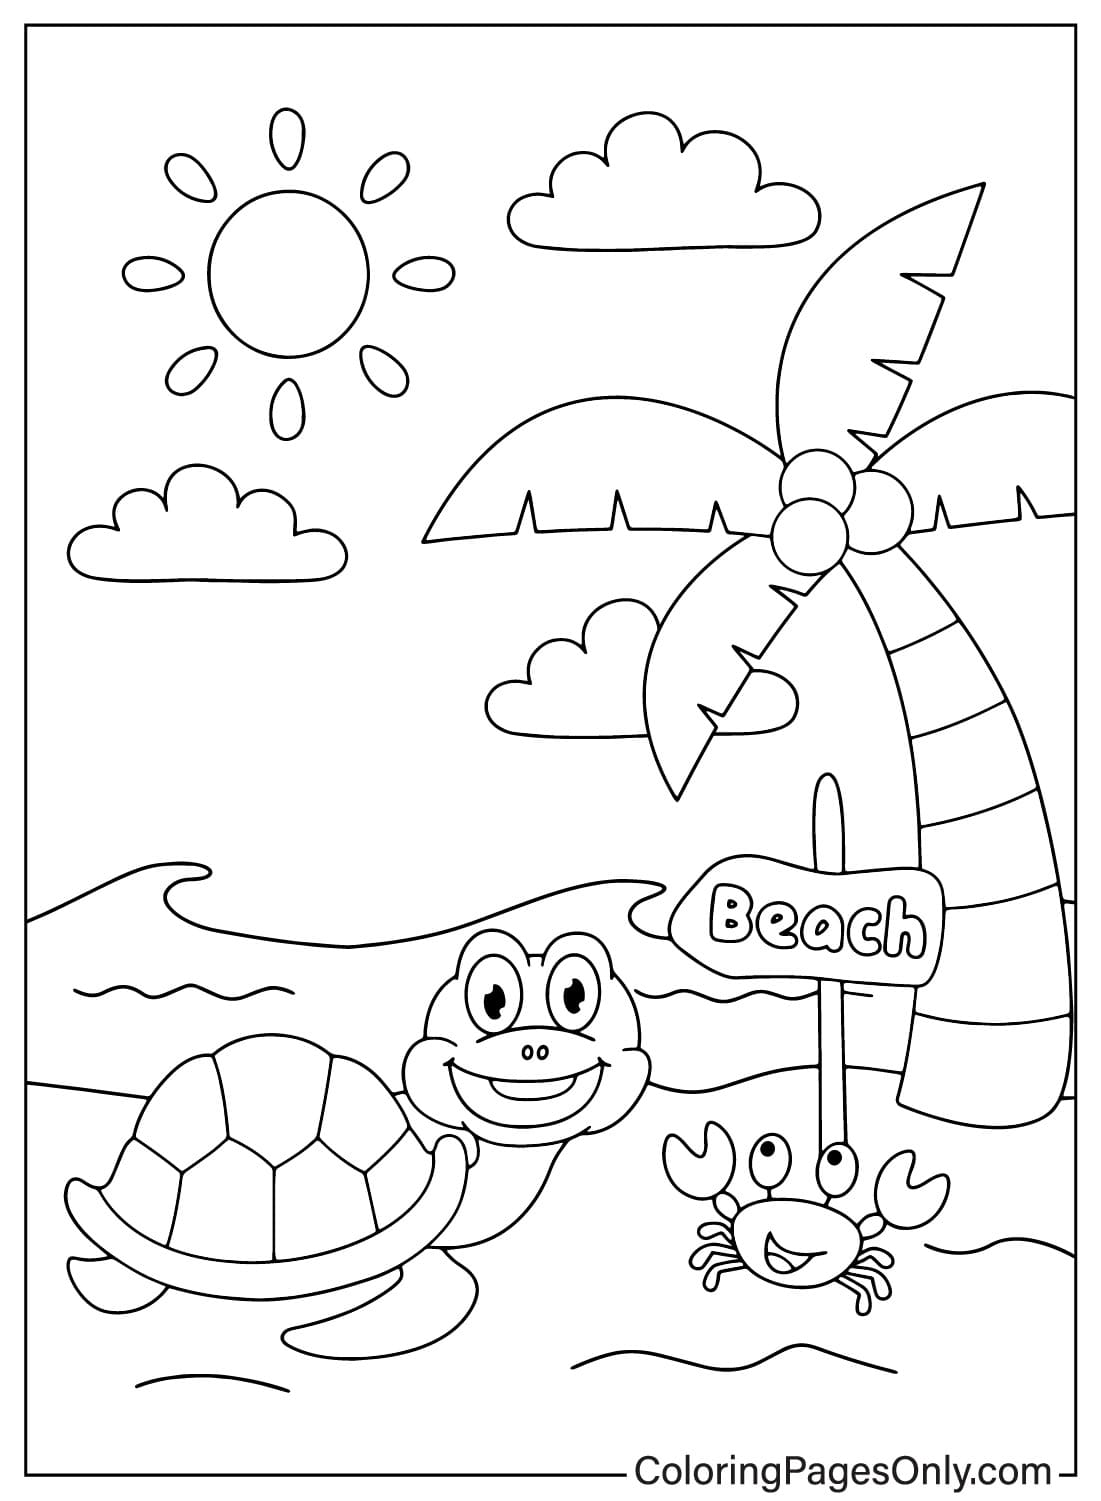 Черепахи и крабы веселятся на пляже